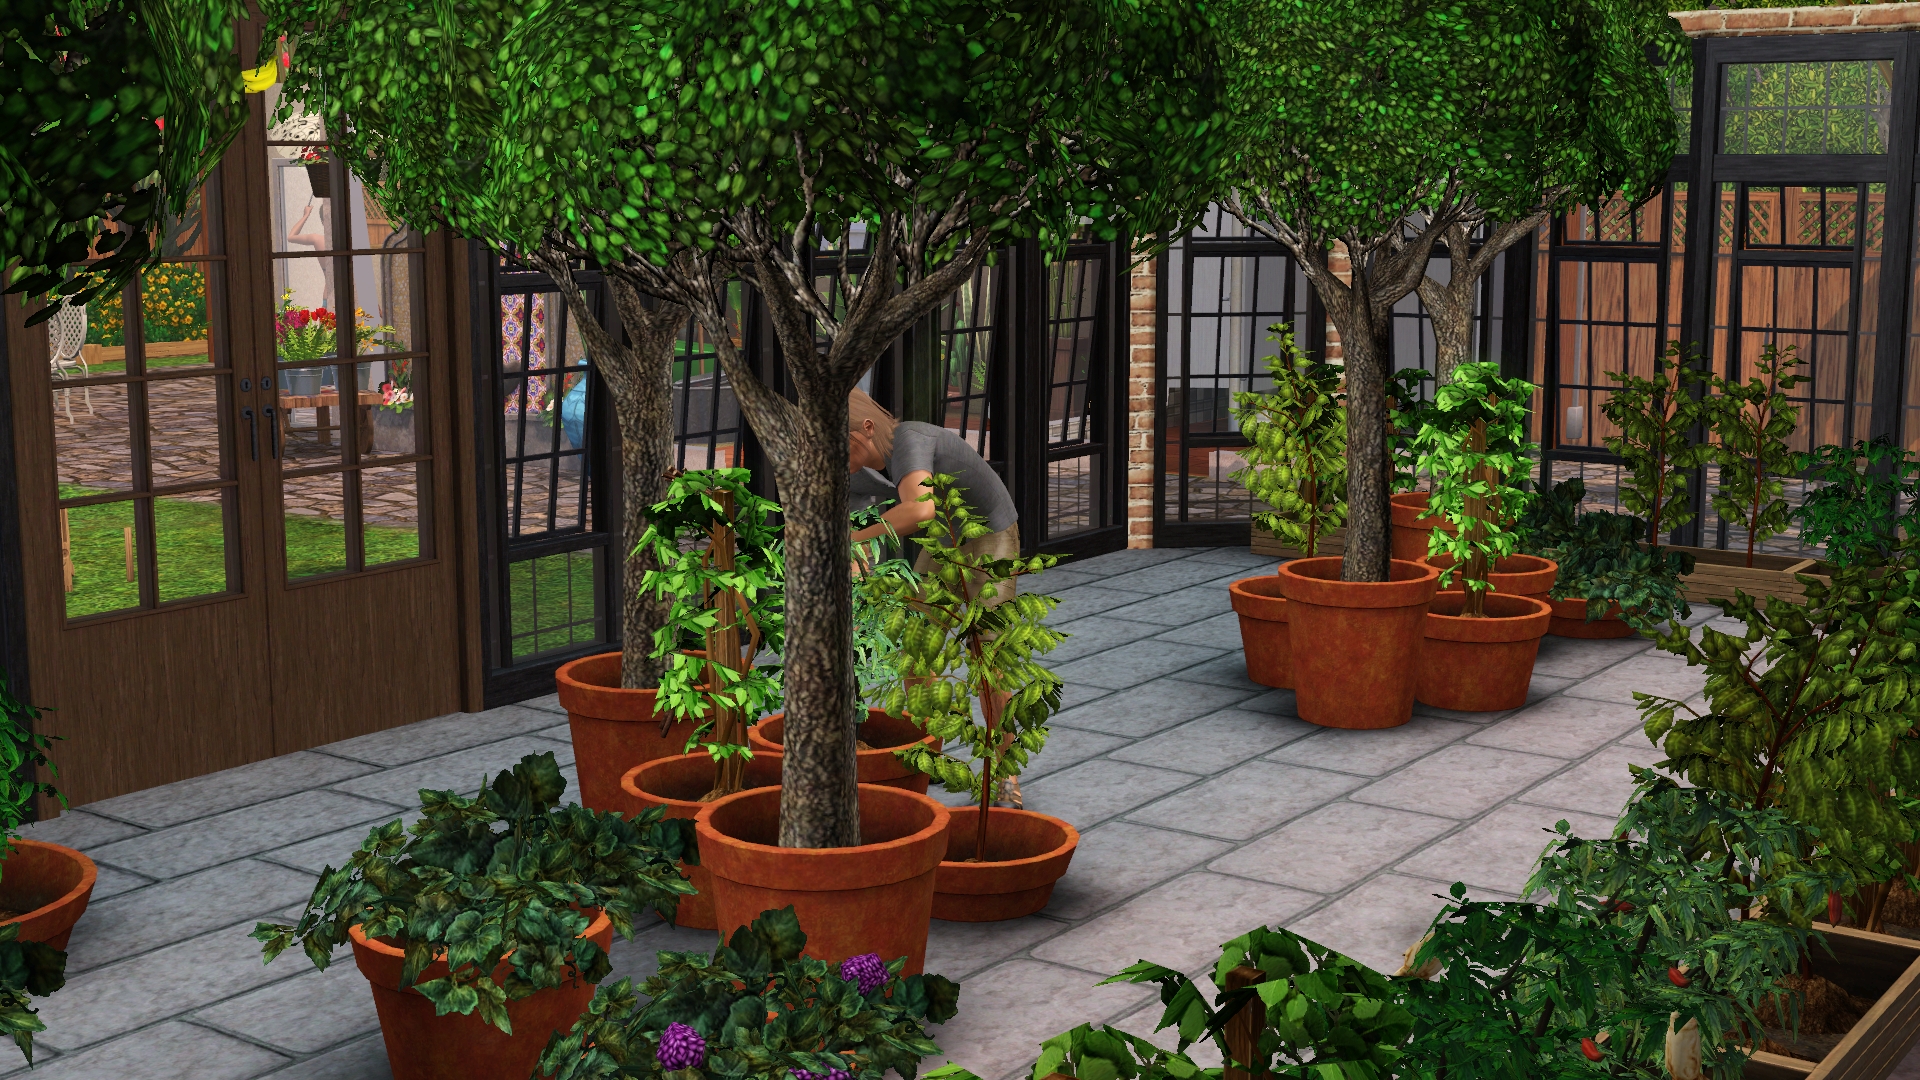 Ichtaca Community Garden Sims 3 Style